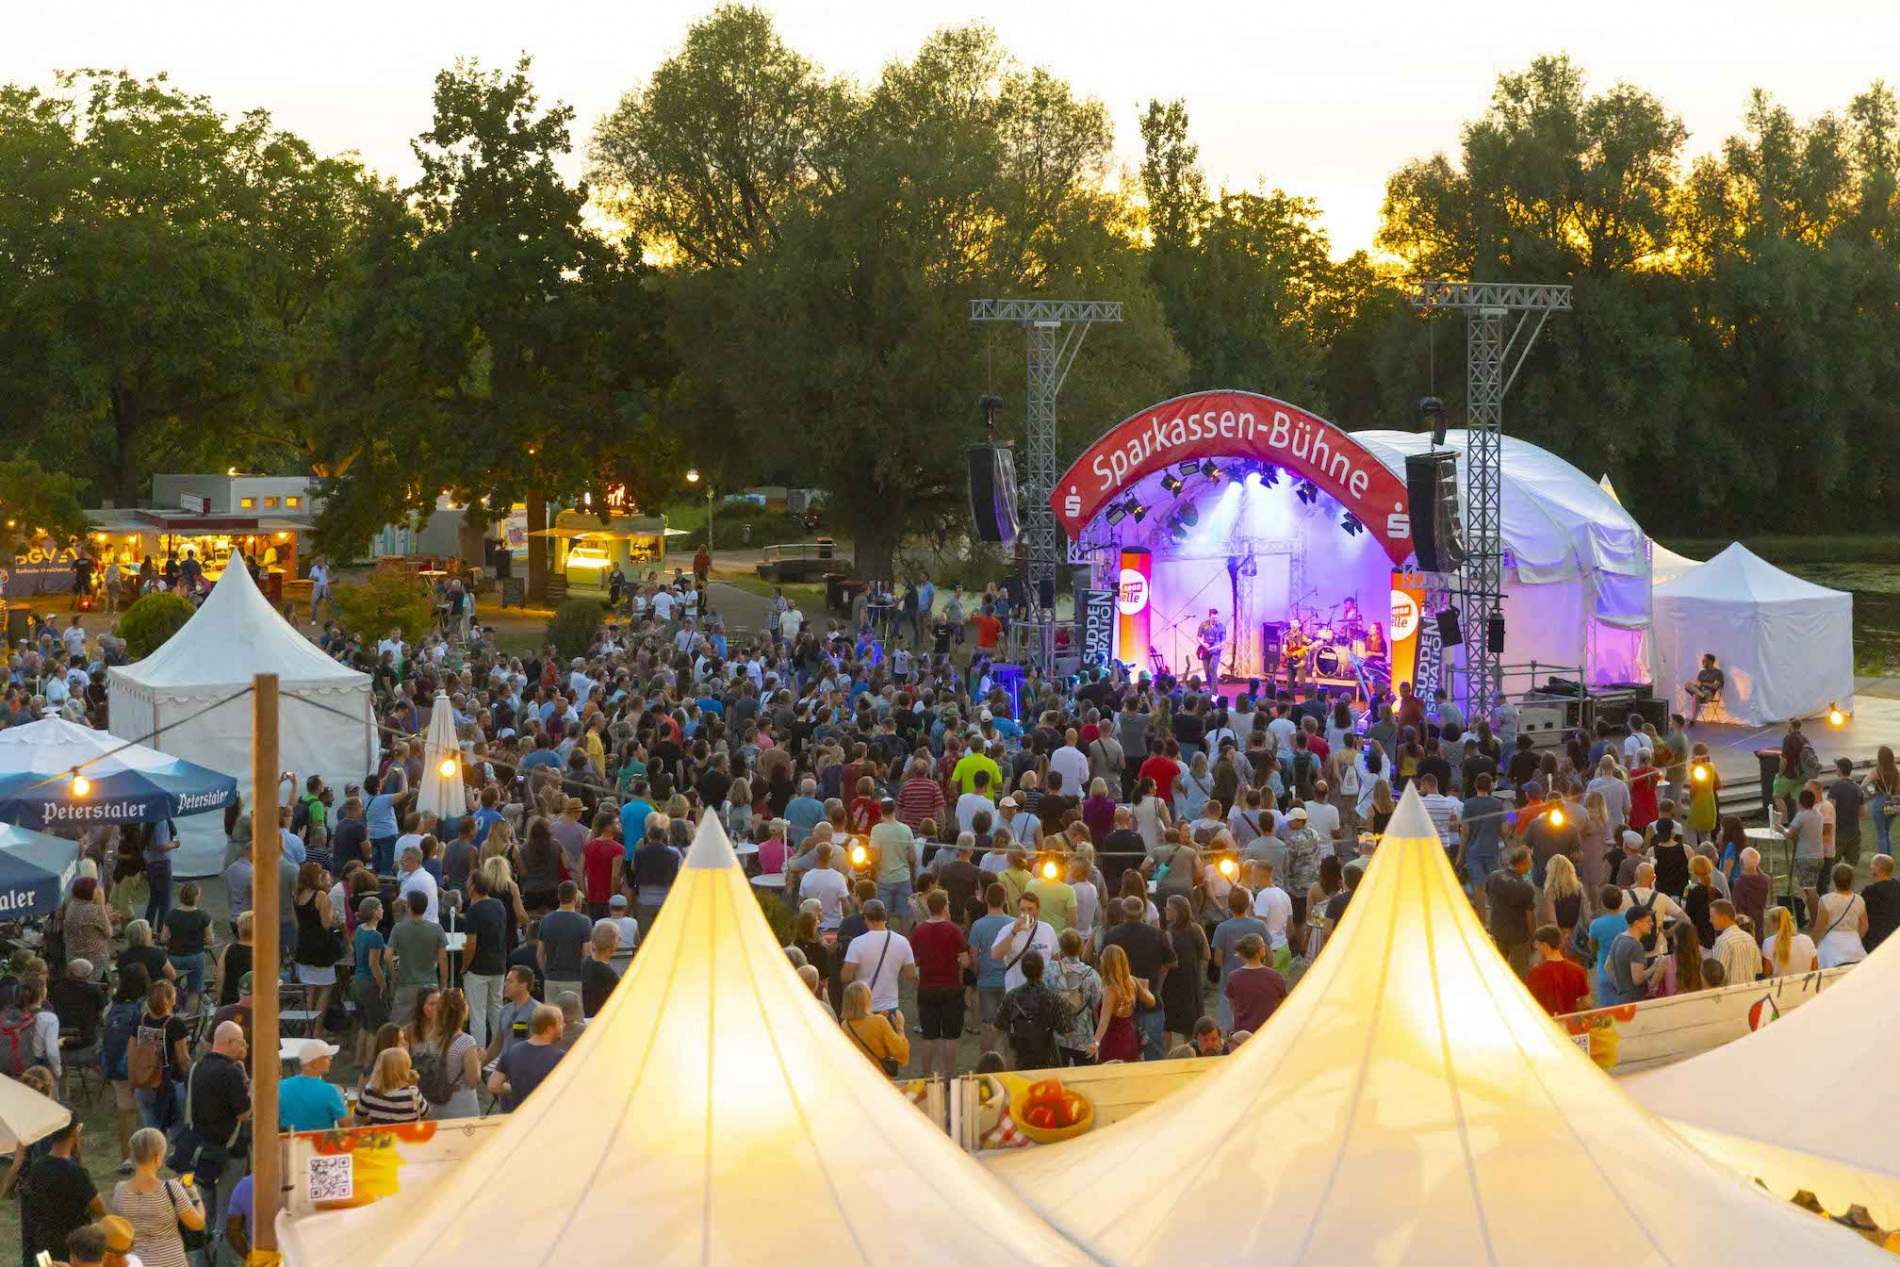  DASF FEST Karlsruhe: In einer Woche starten die Karlsruher Festivaltage mit DAS FEST AM SEE